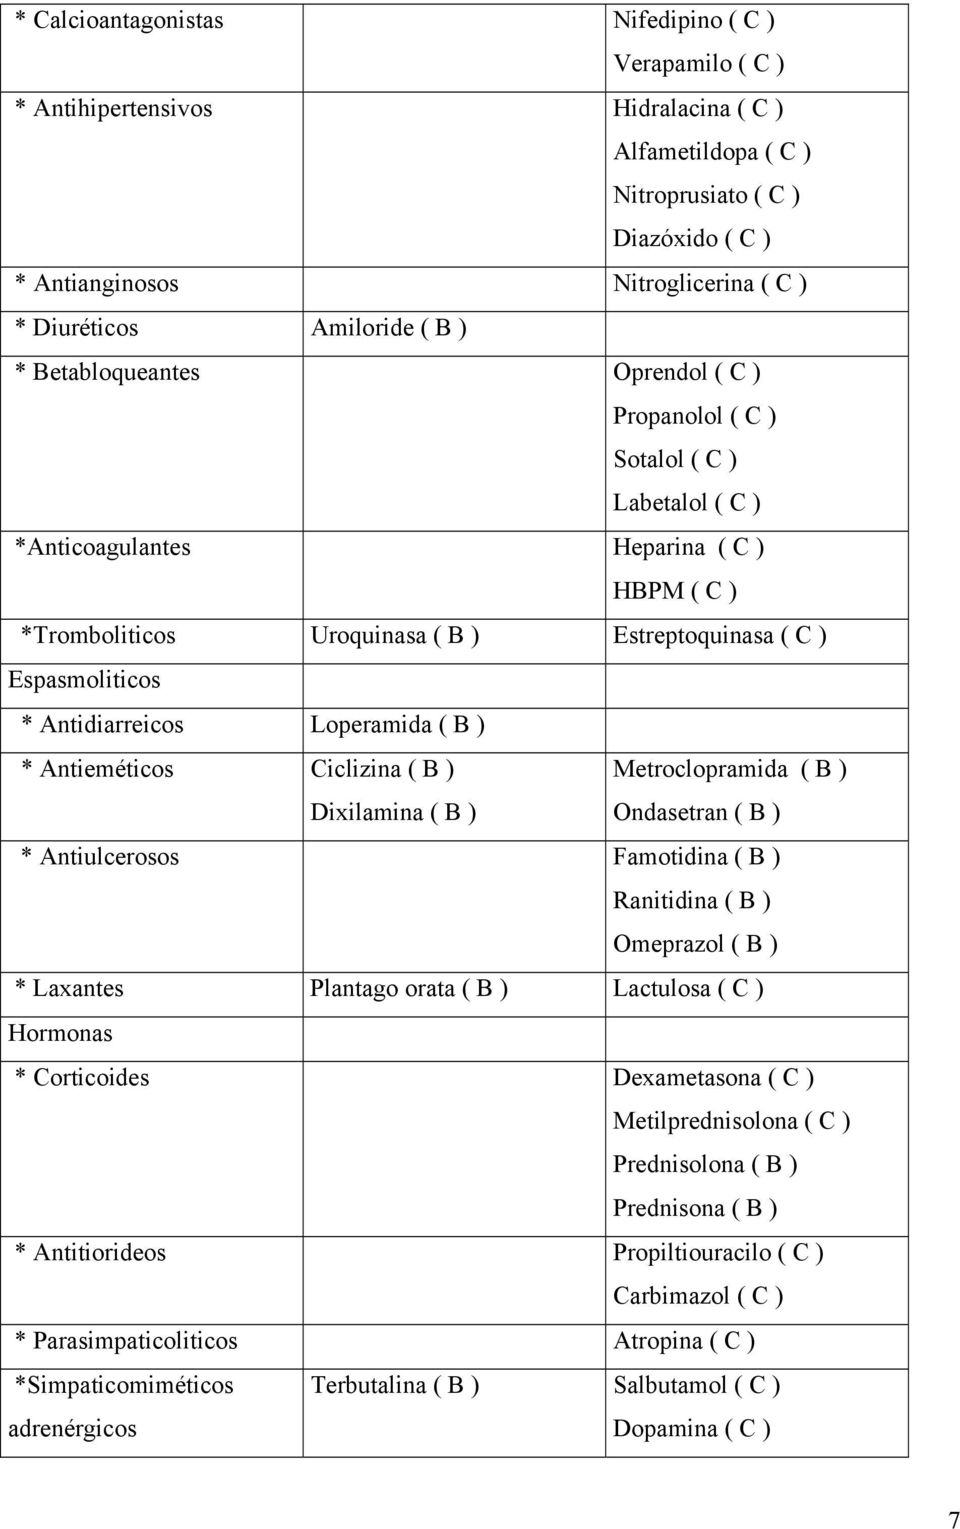 Espasmoliticos * Antidiarreicos Loperamida ( B ) * Antieméticos Ciclizina ( B ) Dixilamina ( B ) Metroclopramida ( B ) Ondasetran ( B ) * Antiulcerosos Famotidina ( B ) Ranitidina ( B ) Omeprazol ( B